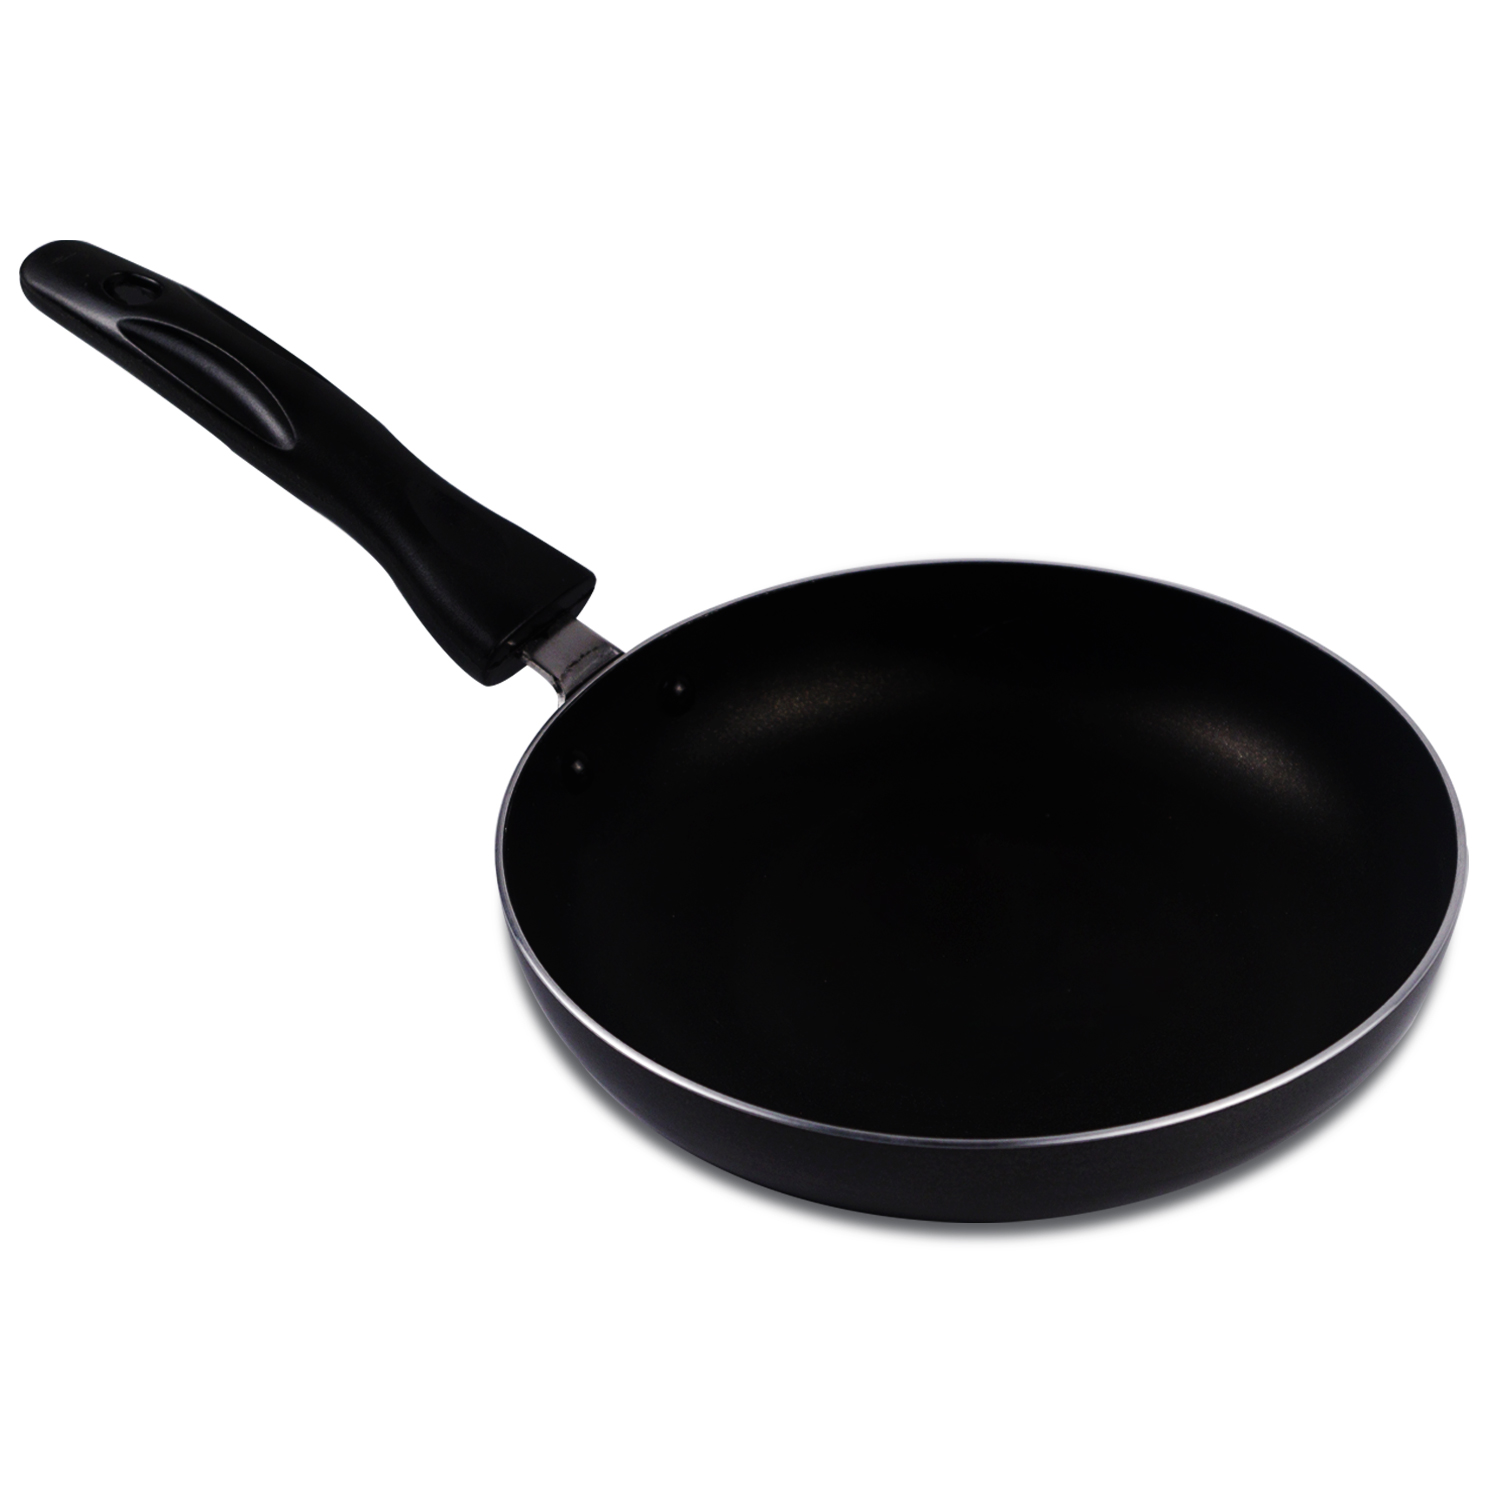 Ibell induction base aluminium fry pan 26 cm black